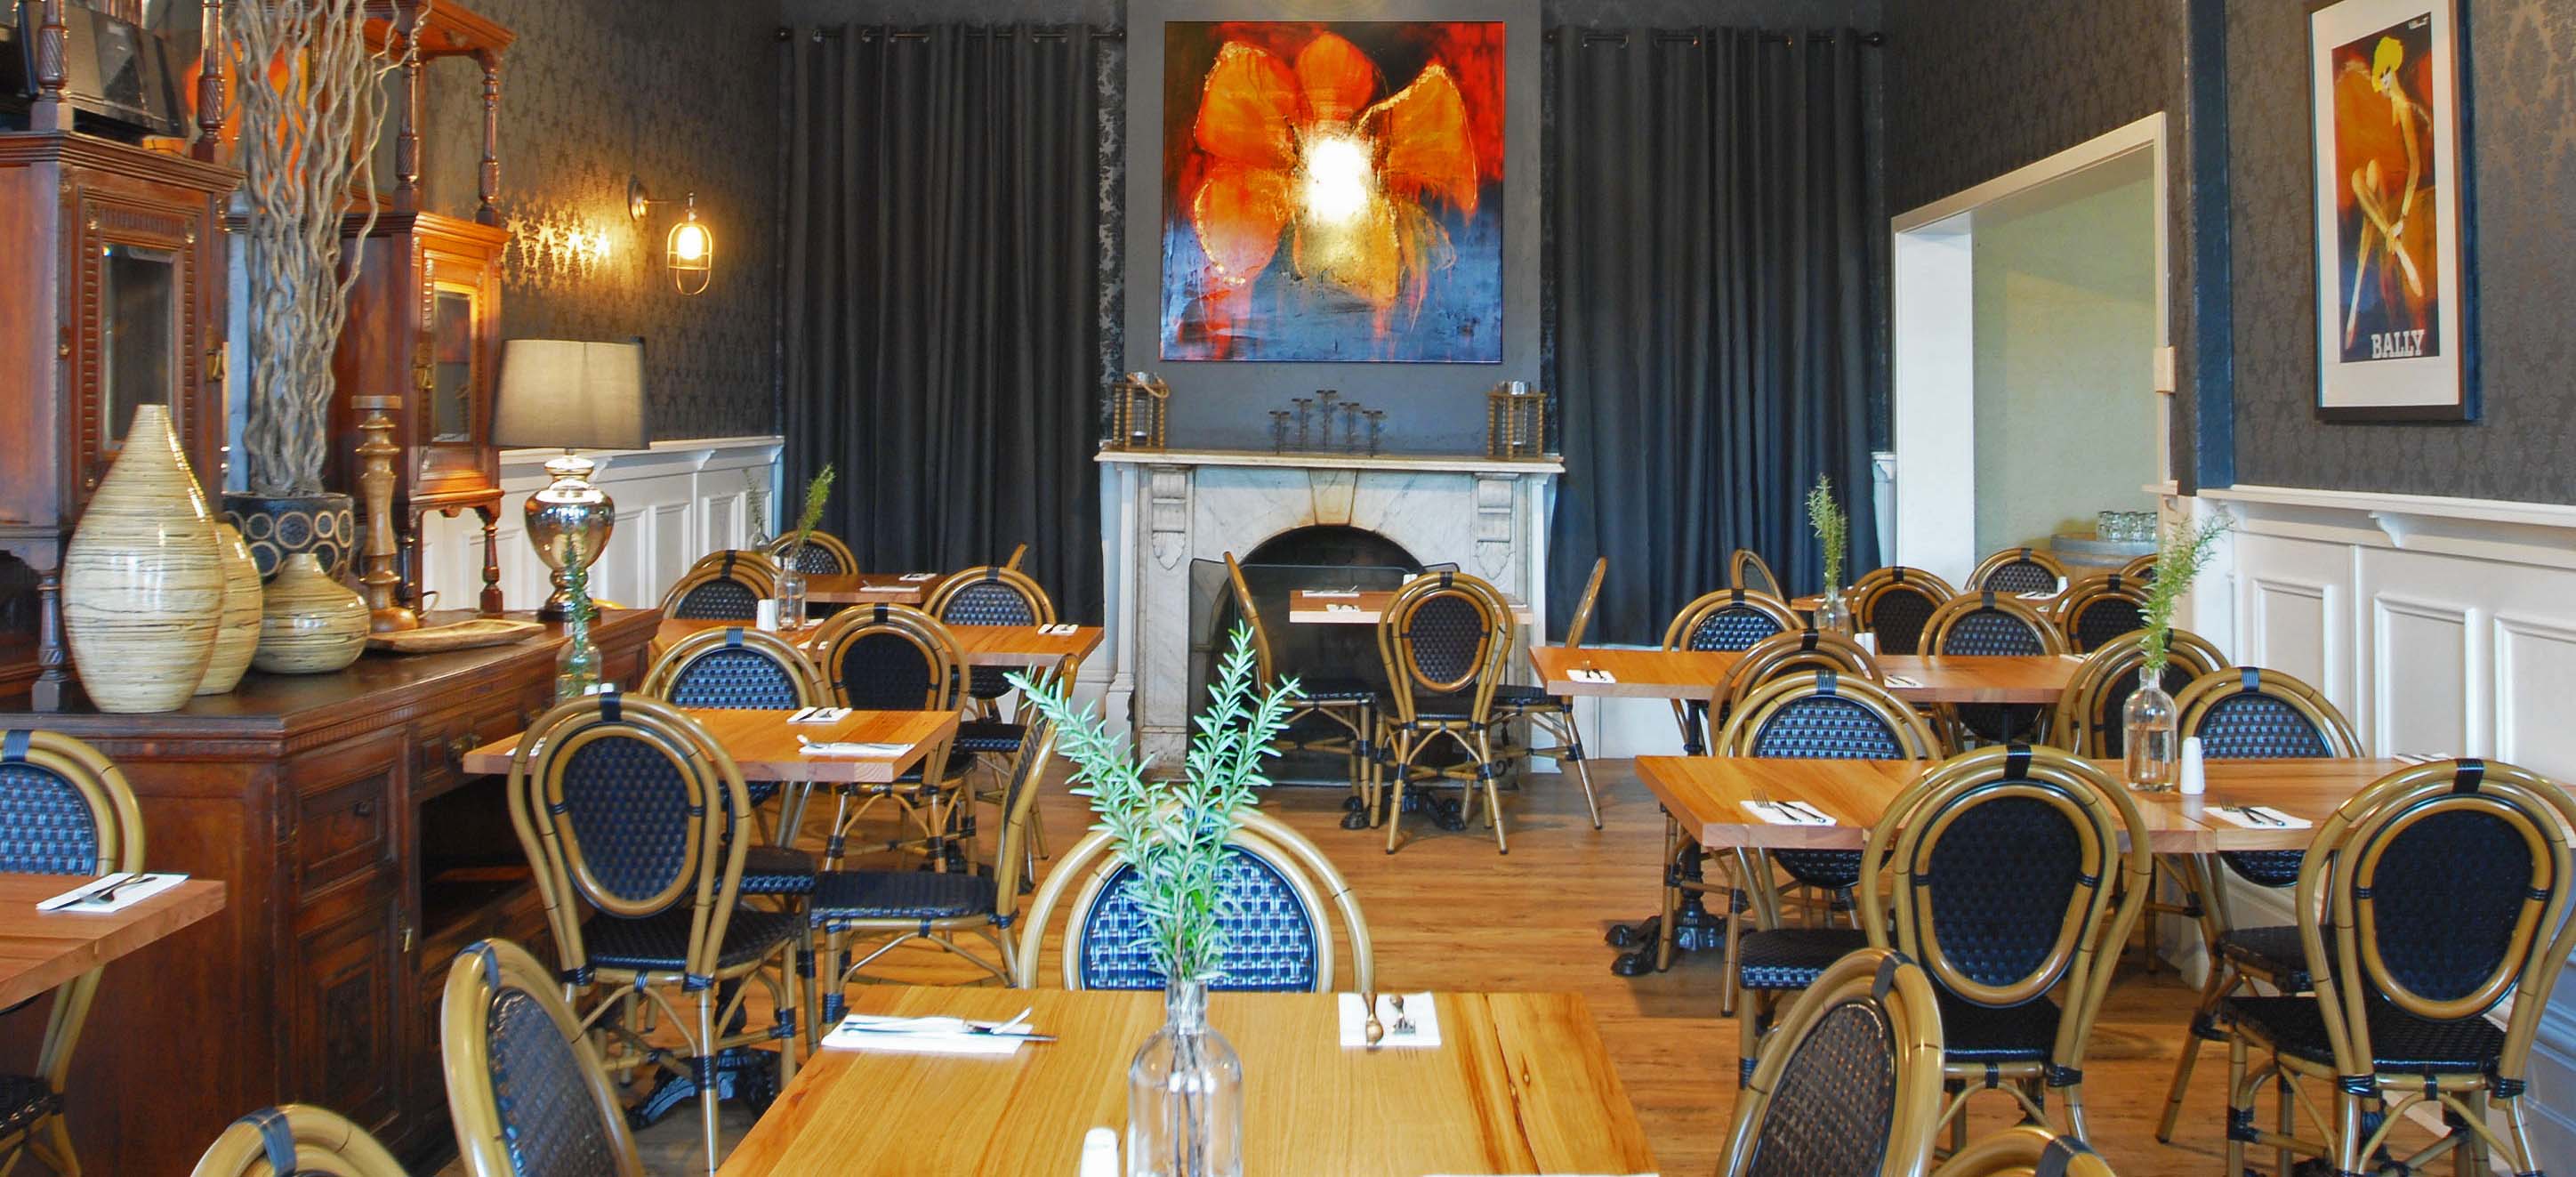 Restaurant Cafe Bar Meals Pub - Healesville Grand Hotel Yarra Valley